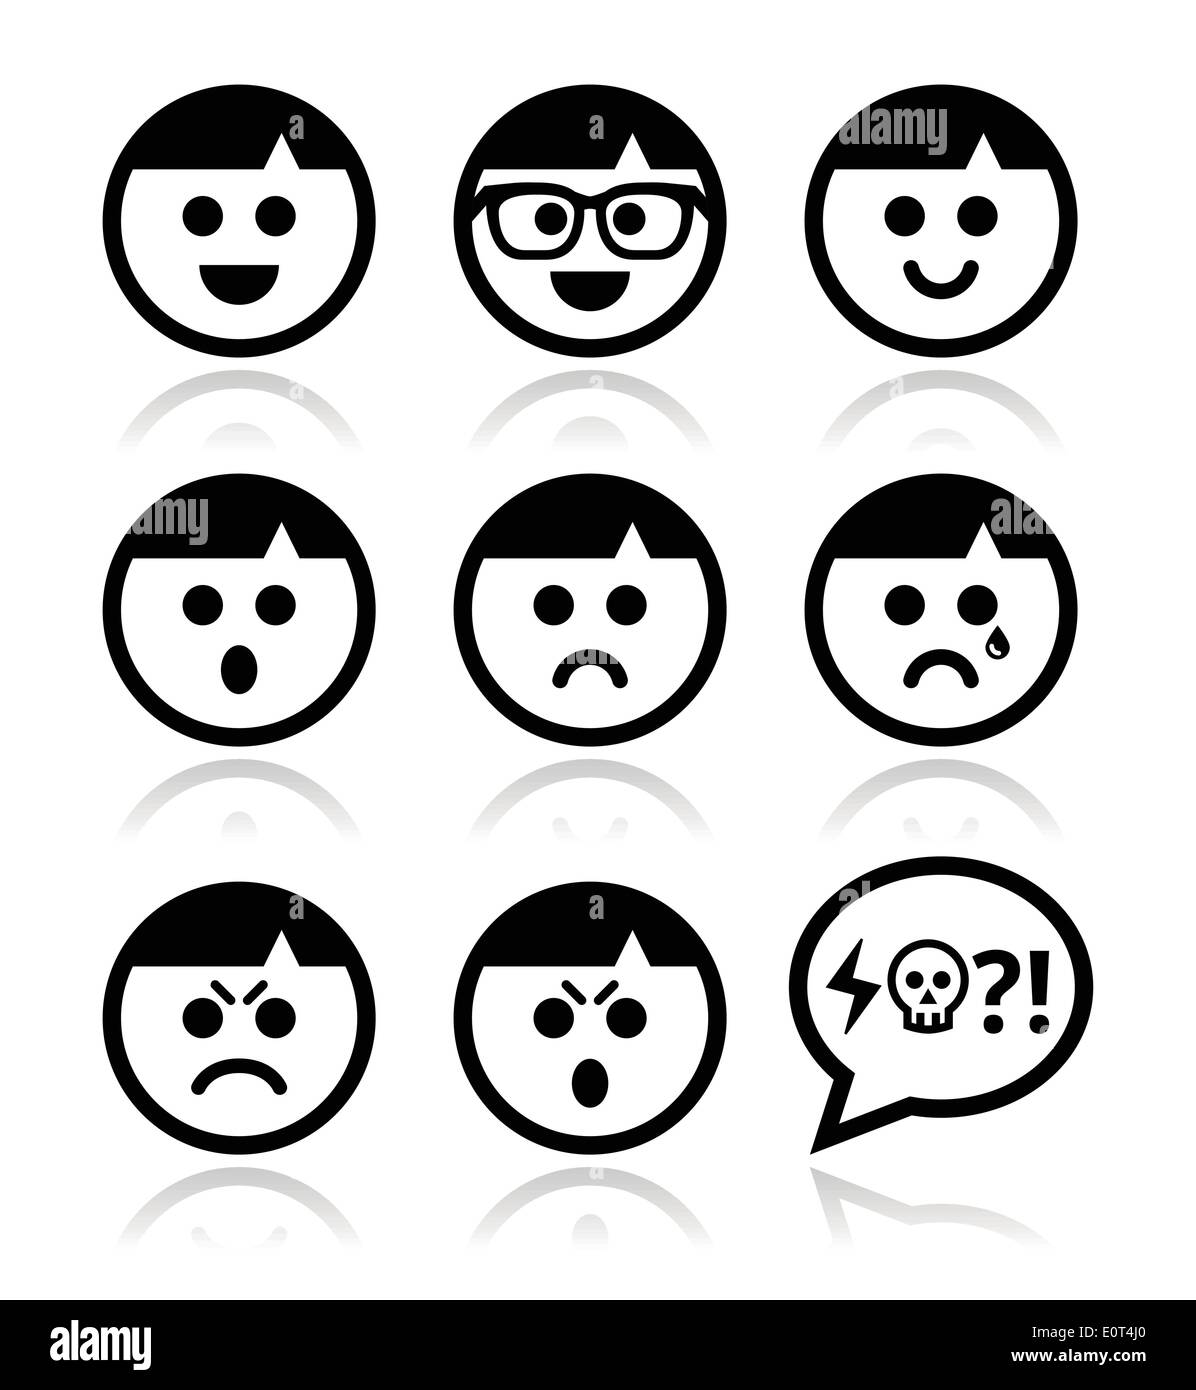 Smiley-Gesichter legen Sie Avatar-Vektor-icons Stock Vektor